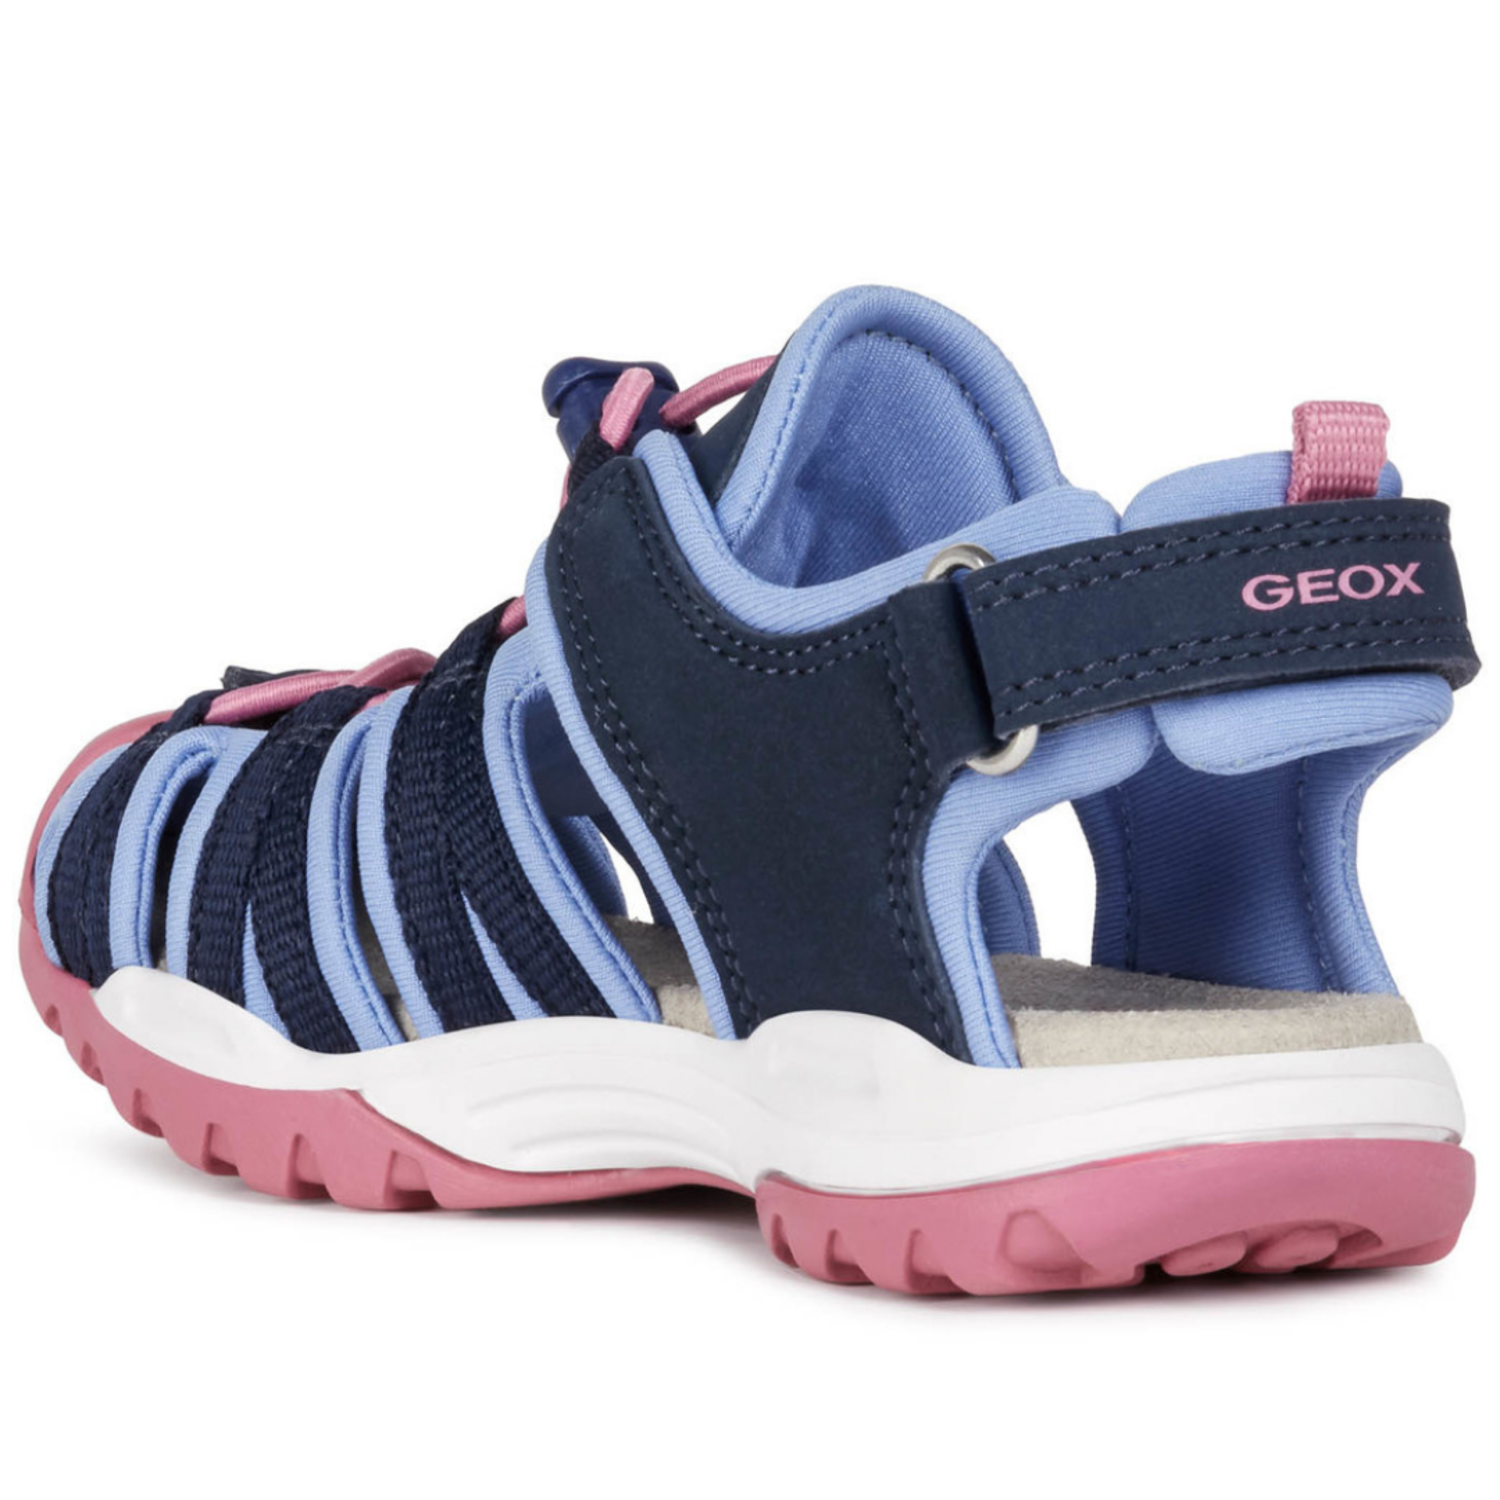 belasting snijden ondergeschikt Geox J Borealis Navy/Avio - Kids Shoes in Canada - Kiddie Kobbler St Laurent